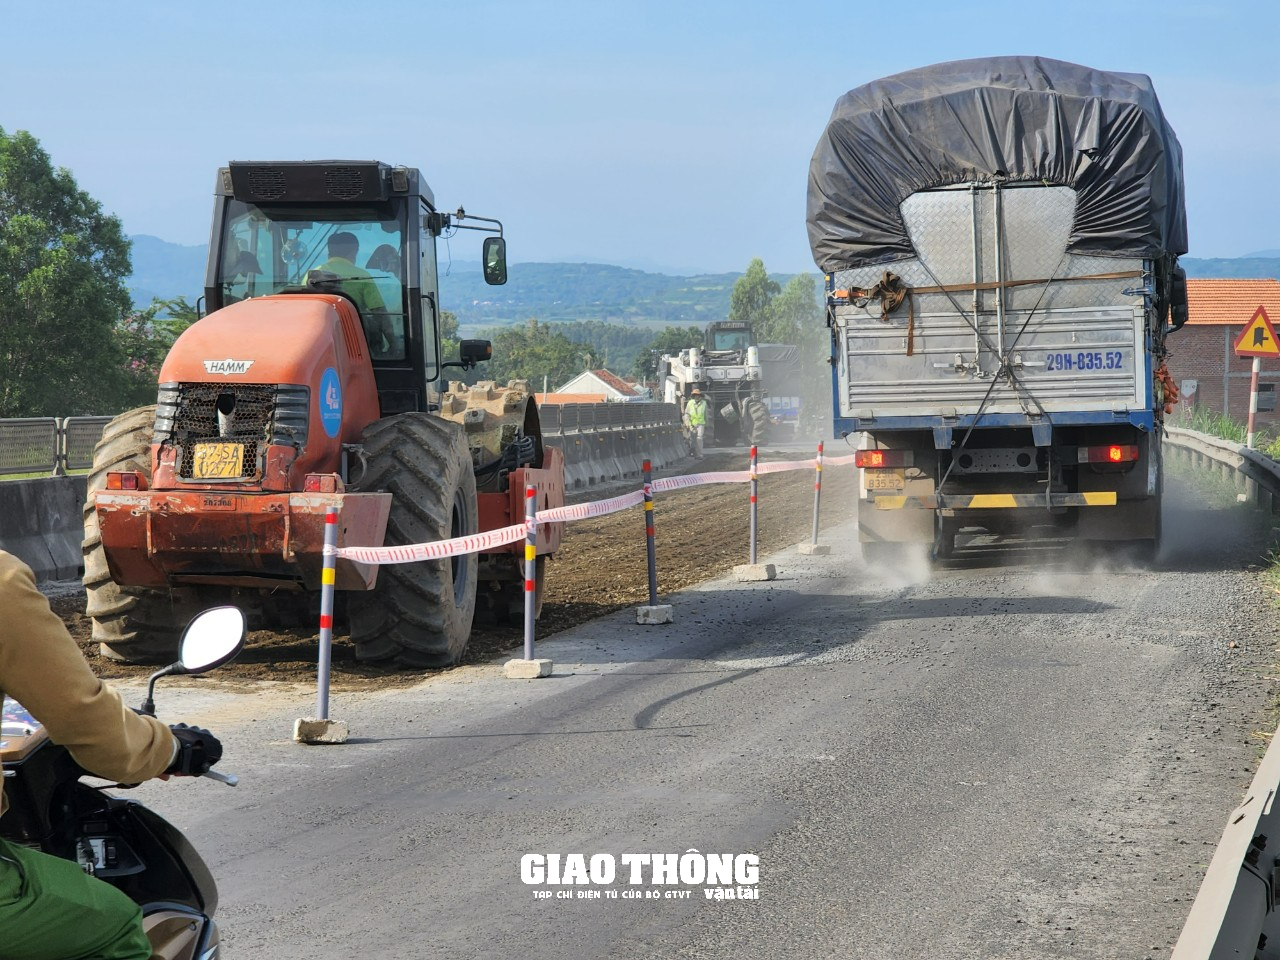 Cận cảnh thi công cào bóc tái sinh bằng xi măng mặt đường tuyến QL1 qua Phú Yên. - Ảnh 4.